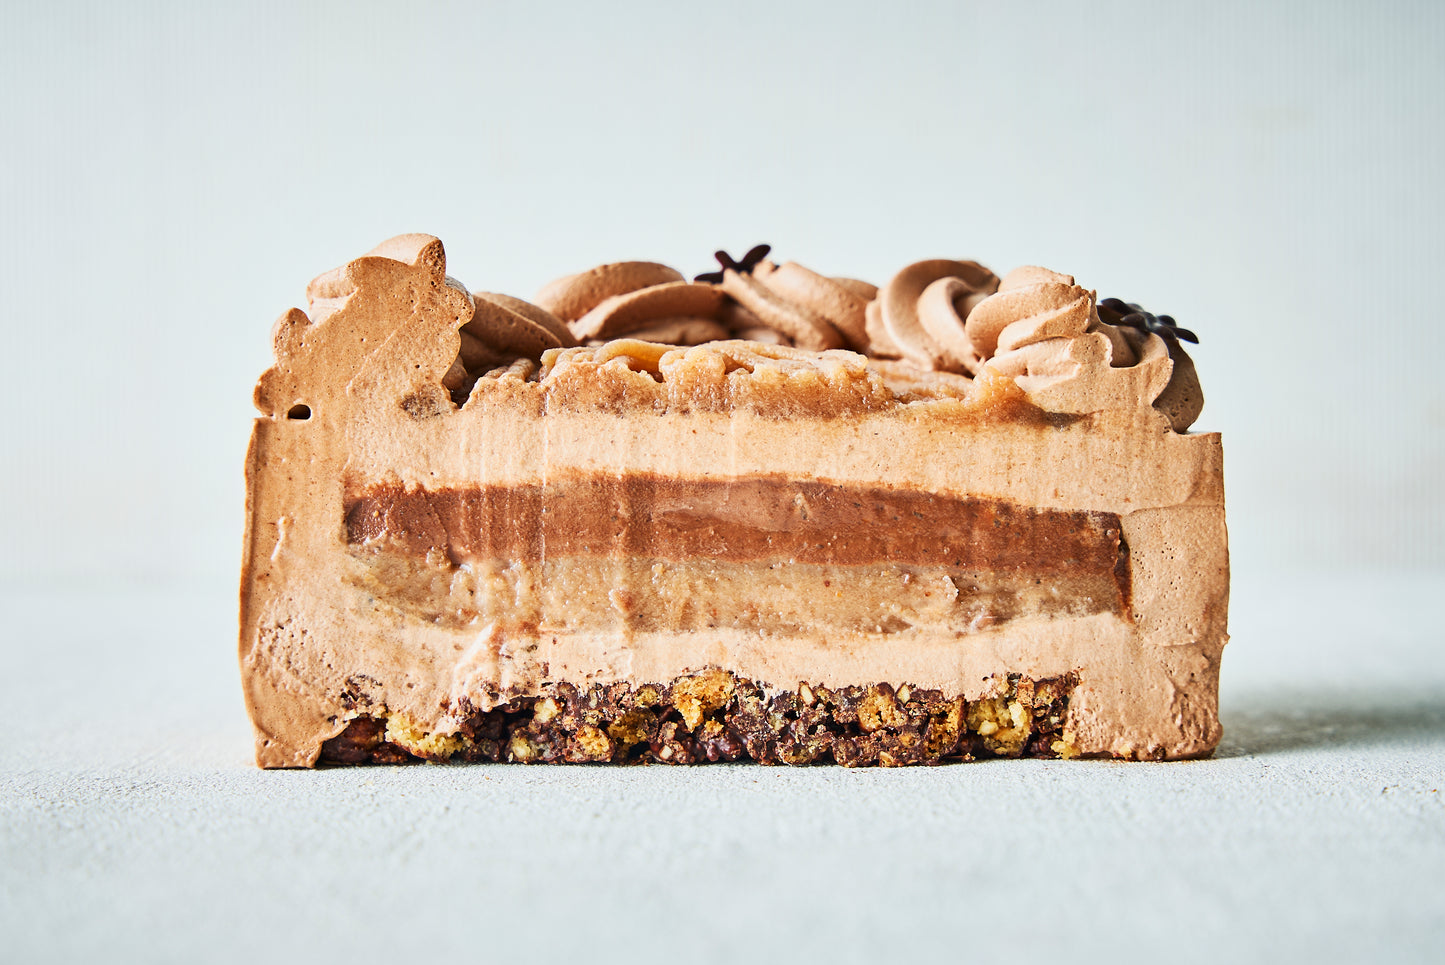 チョコレートと栗のムースケーキ(Mousse chocolat marron)【全国配送】配送指定期間：12月23日〜12月25日